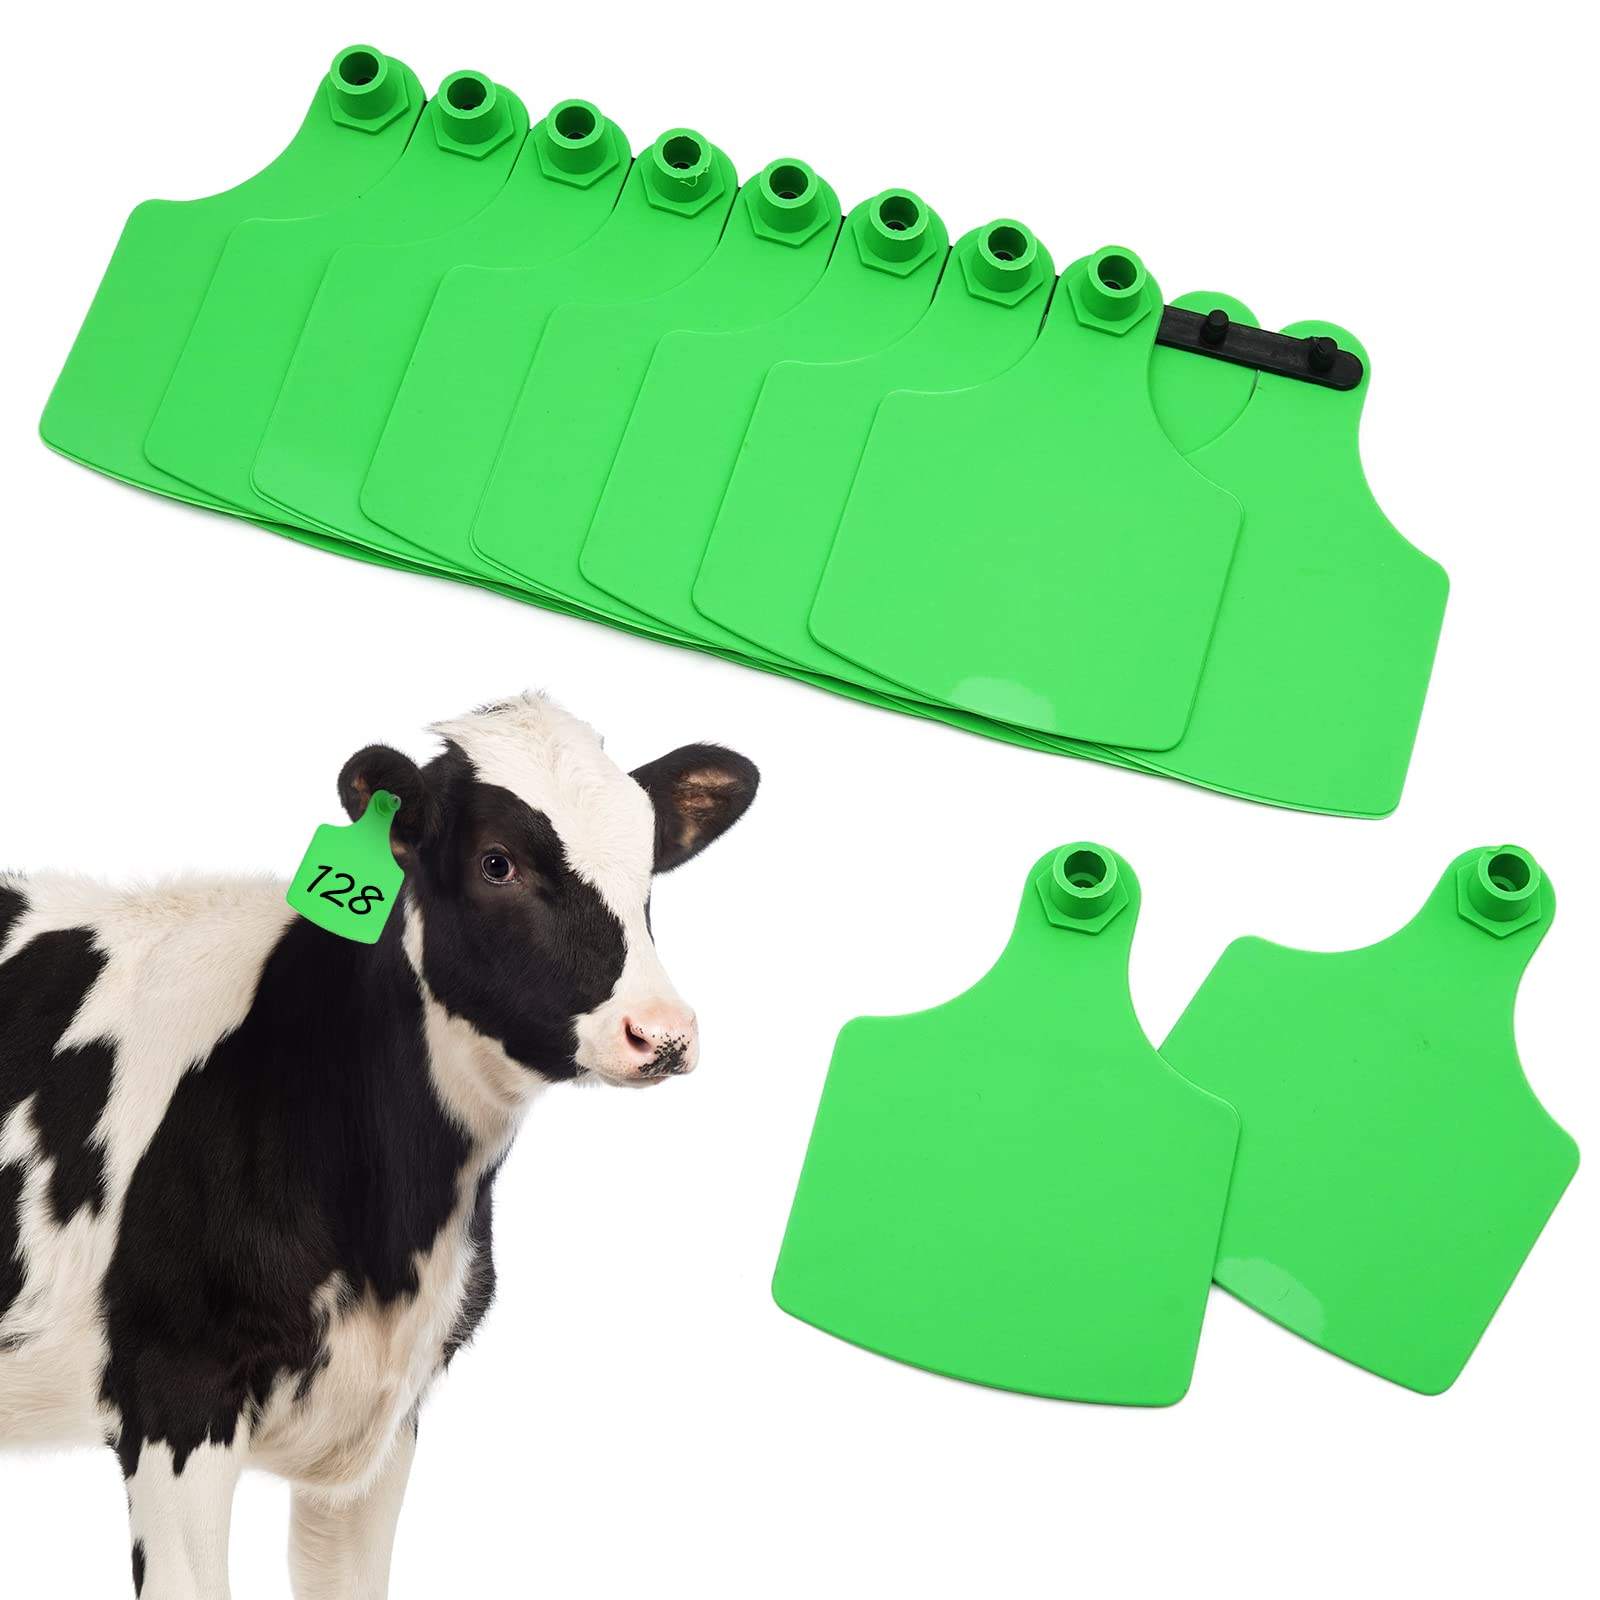 Crotal de oreja de plástico animal de material tpu colorido para aplicador de seguimiento de cerdos crotal de oreja de animal de granja